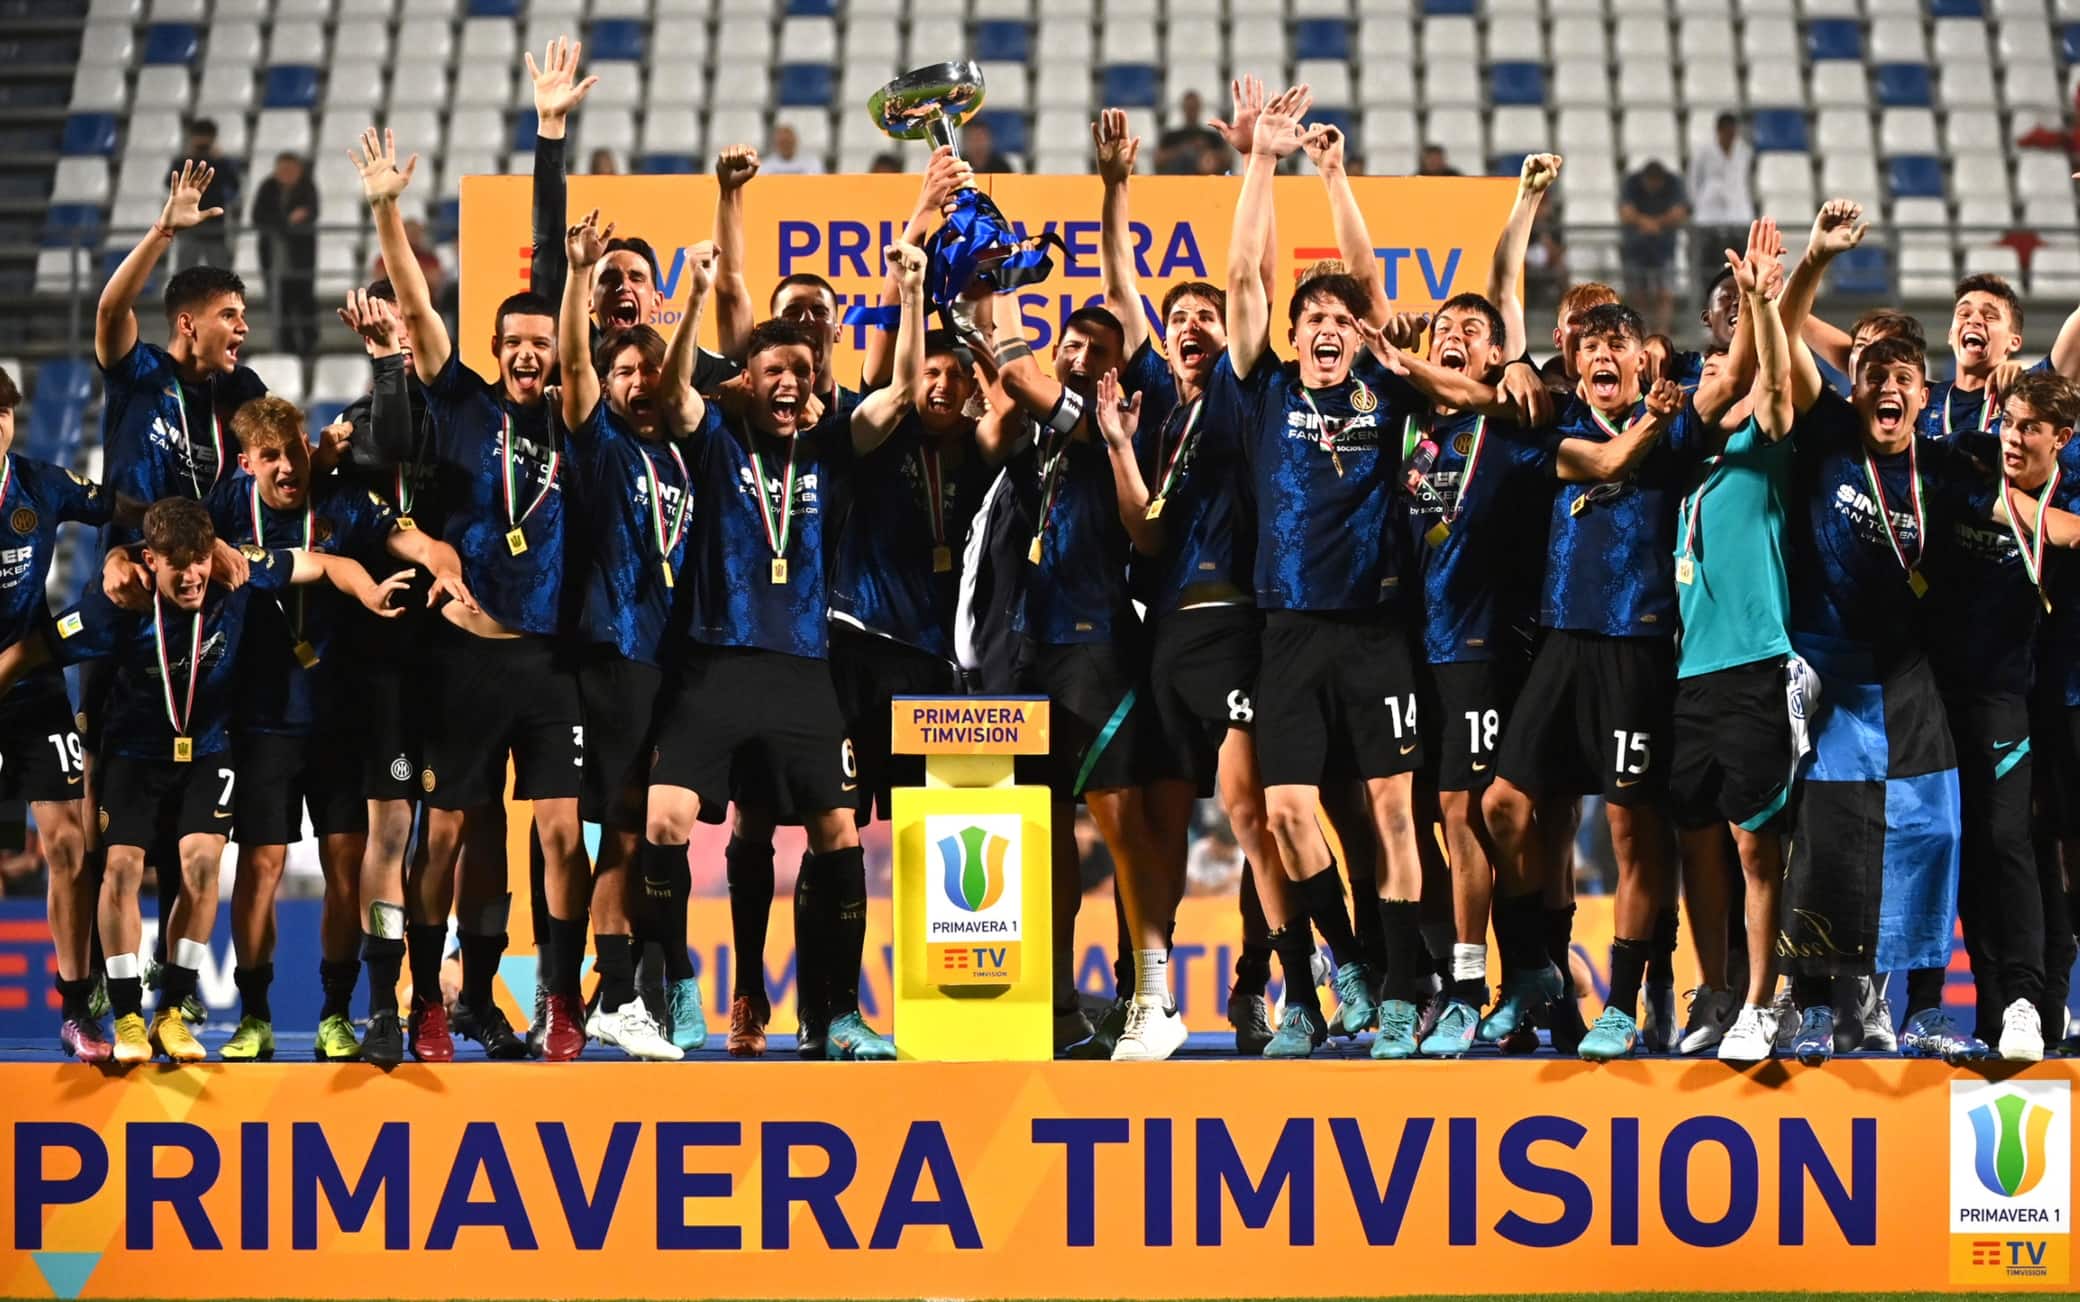 Campionato Nazionale Primavera Serie A U19 - Italy